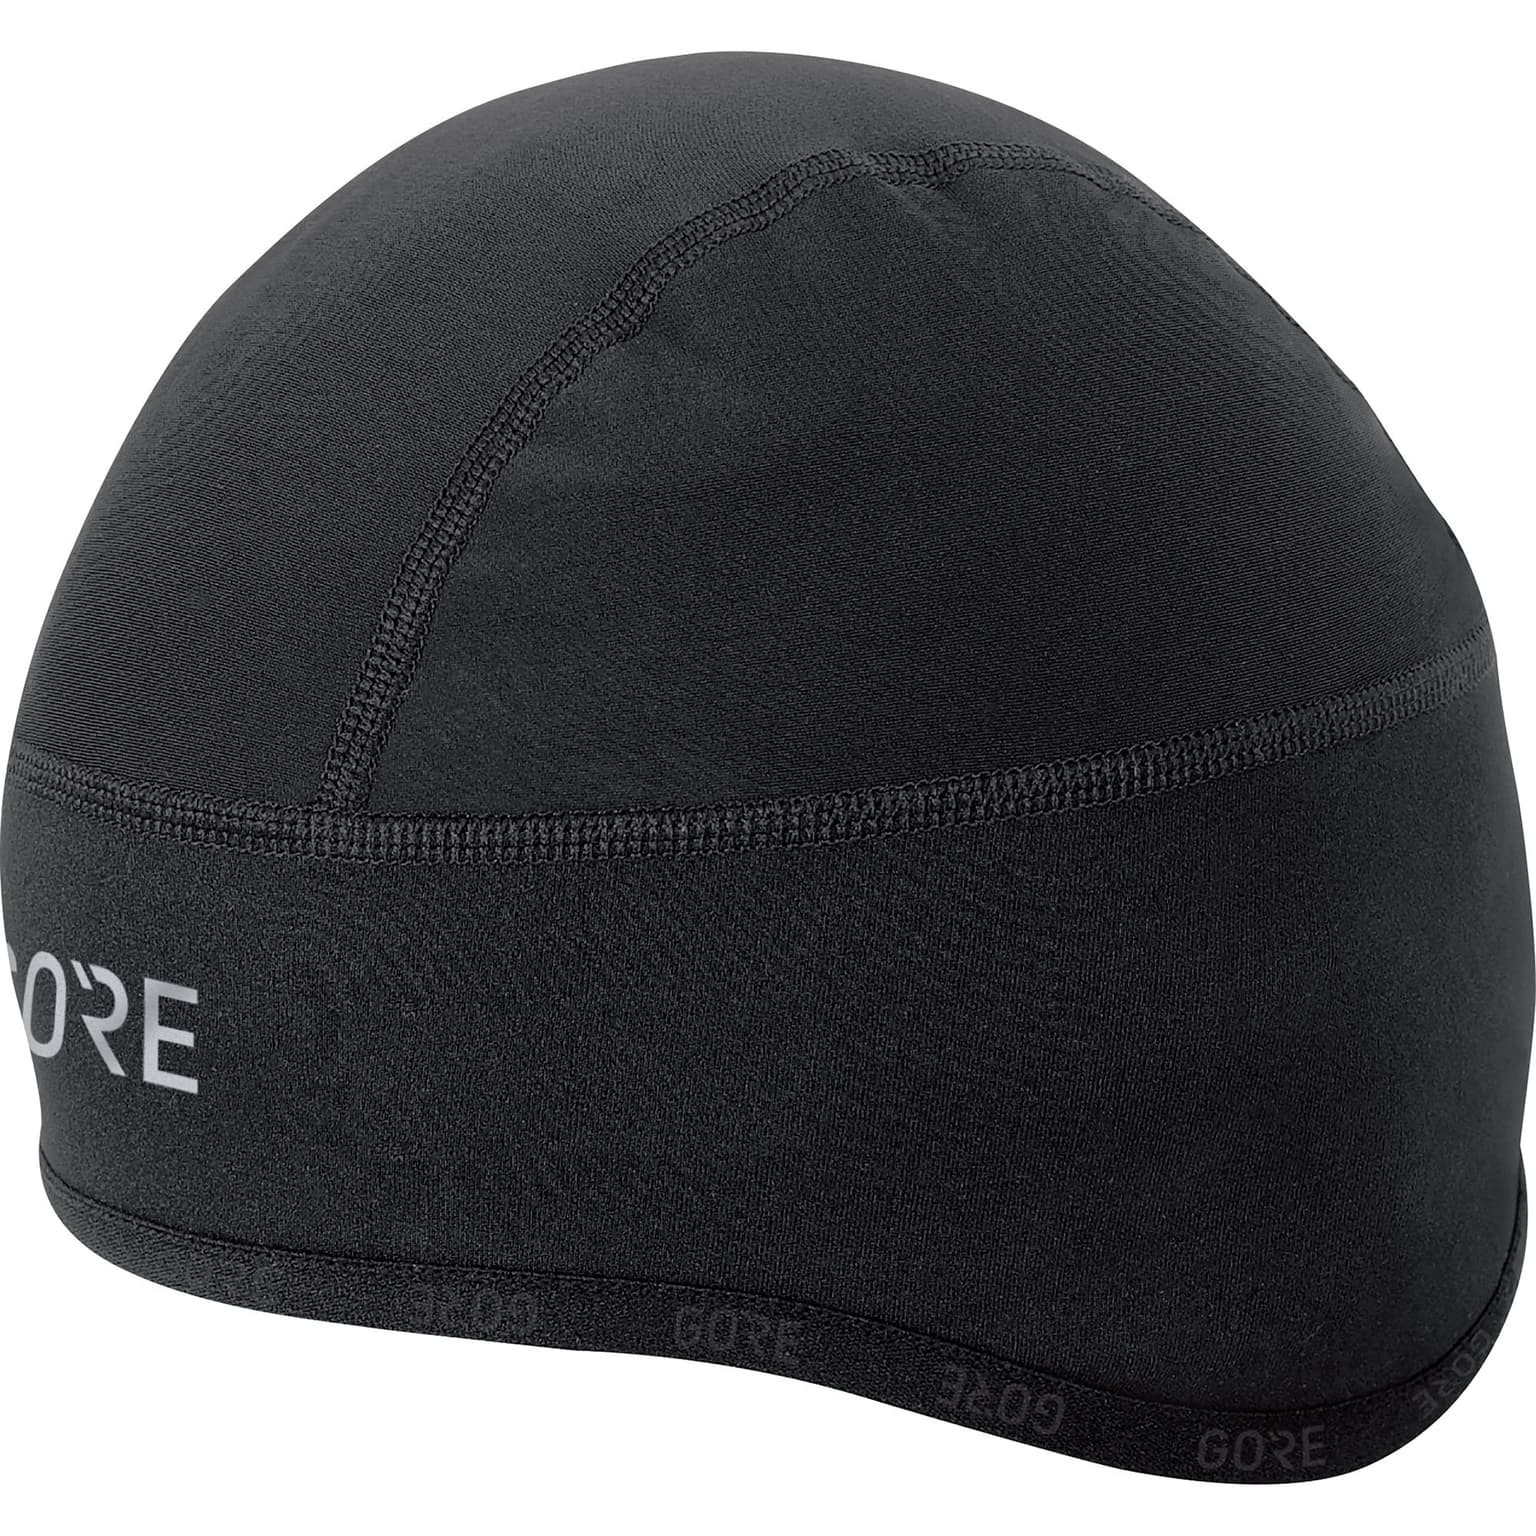 Gore Gore C3 GWS Helmet Kappe Bike-Mütze schwarz 1